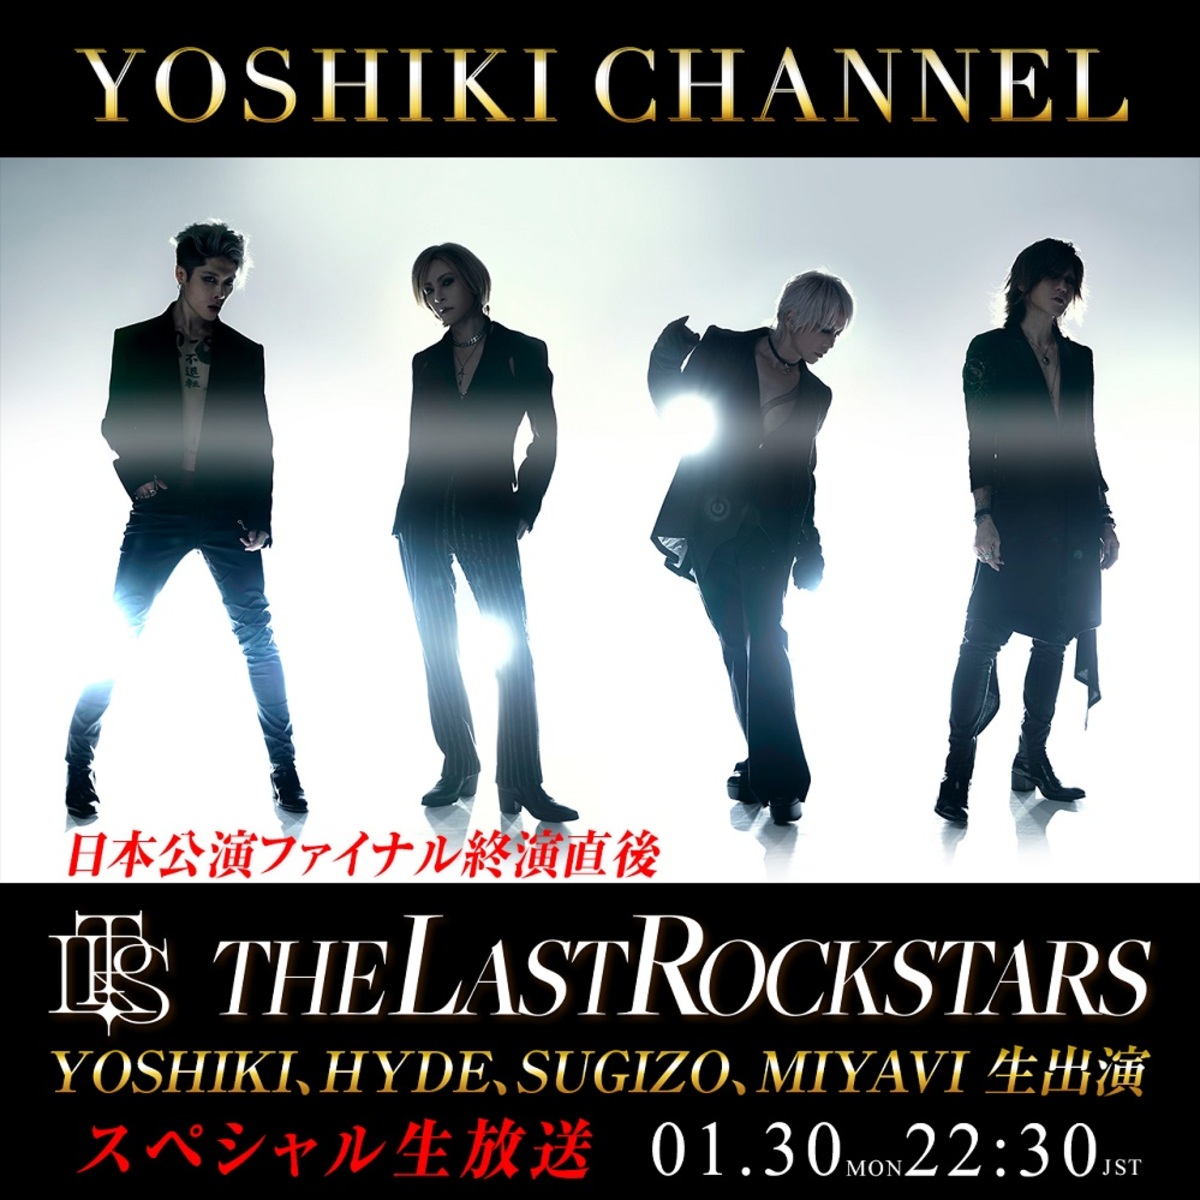 正規店定番THE LAST ROCKSTARS VIP YOSHIKI HYDE ミュージシャン